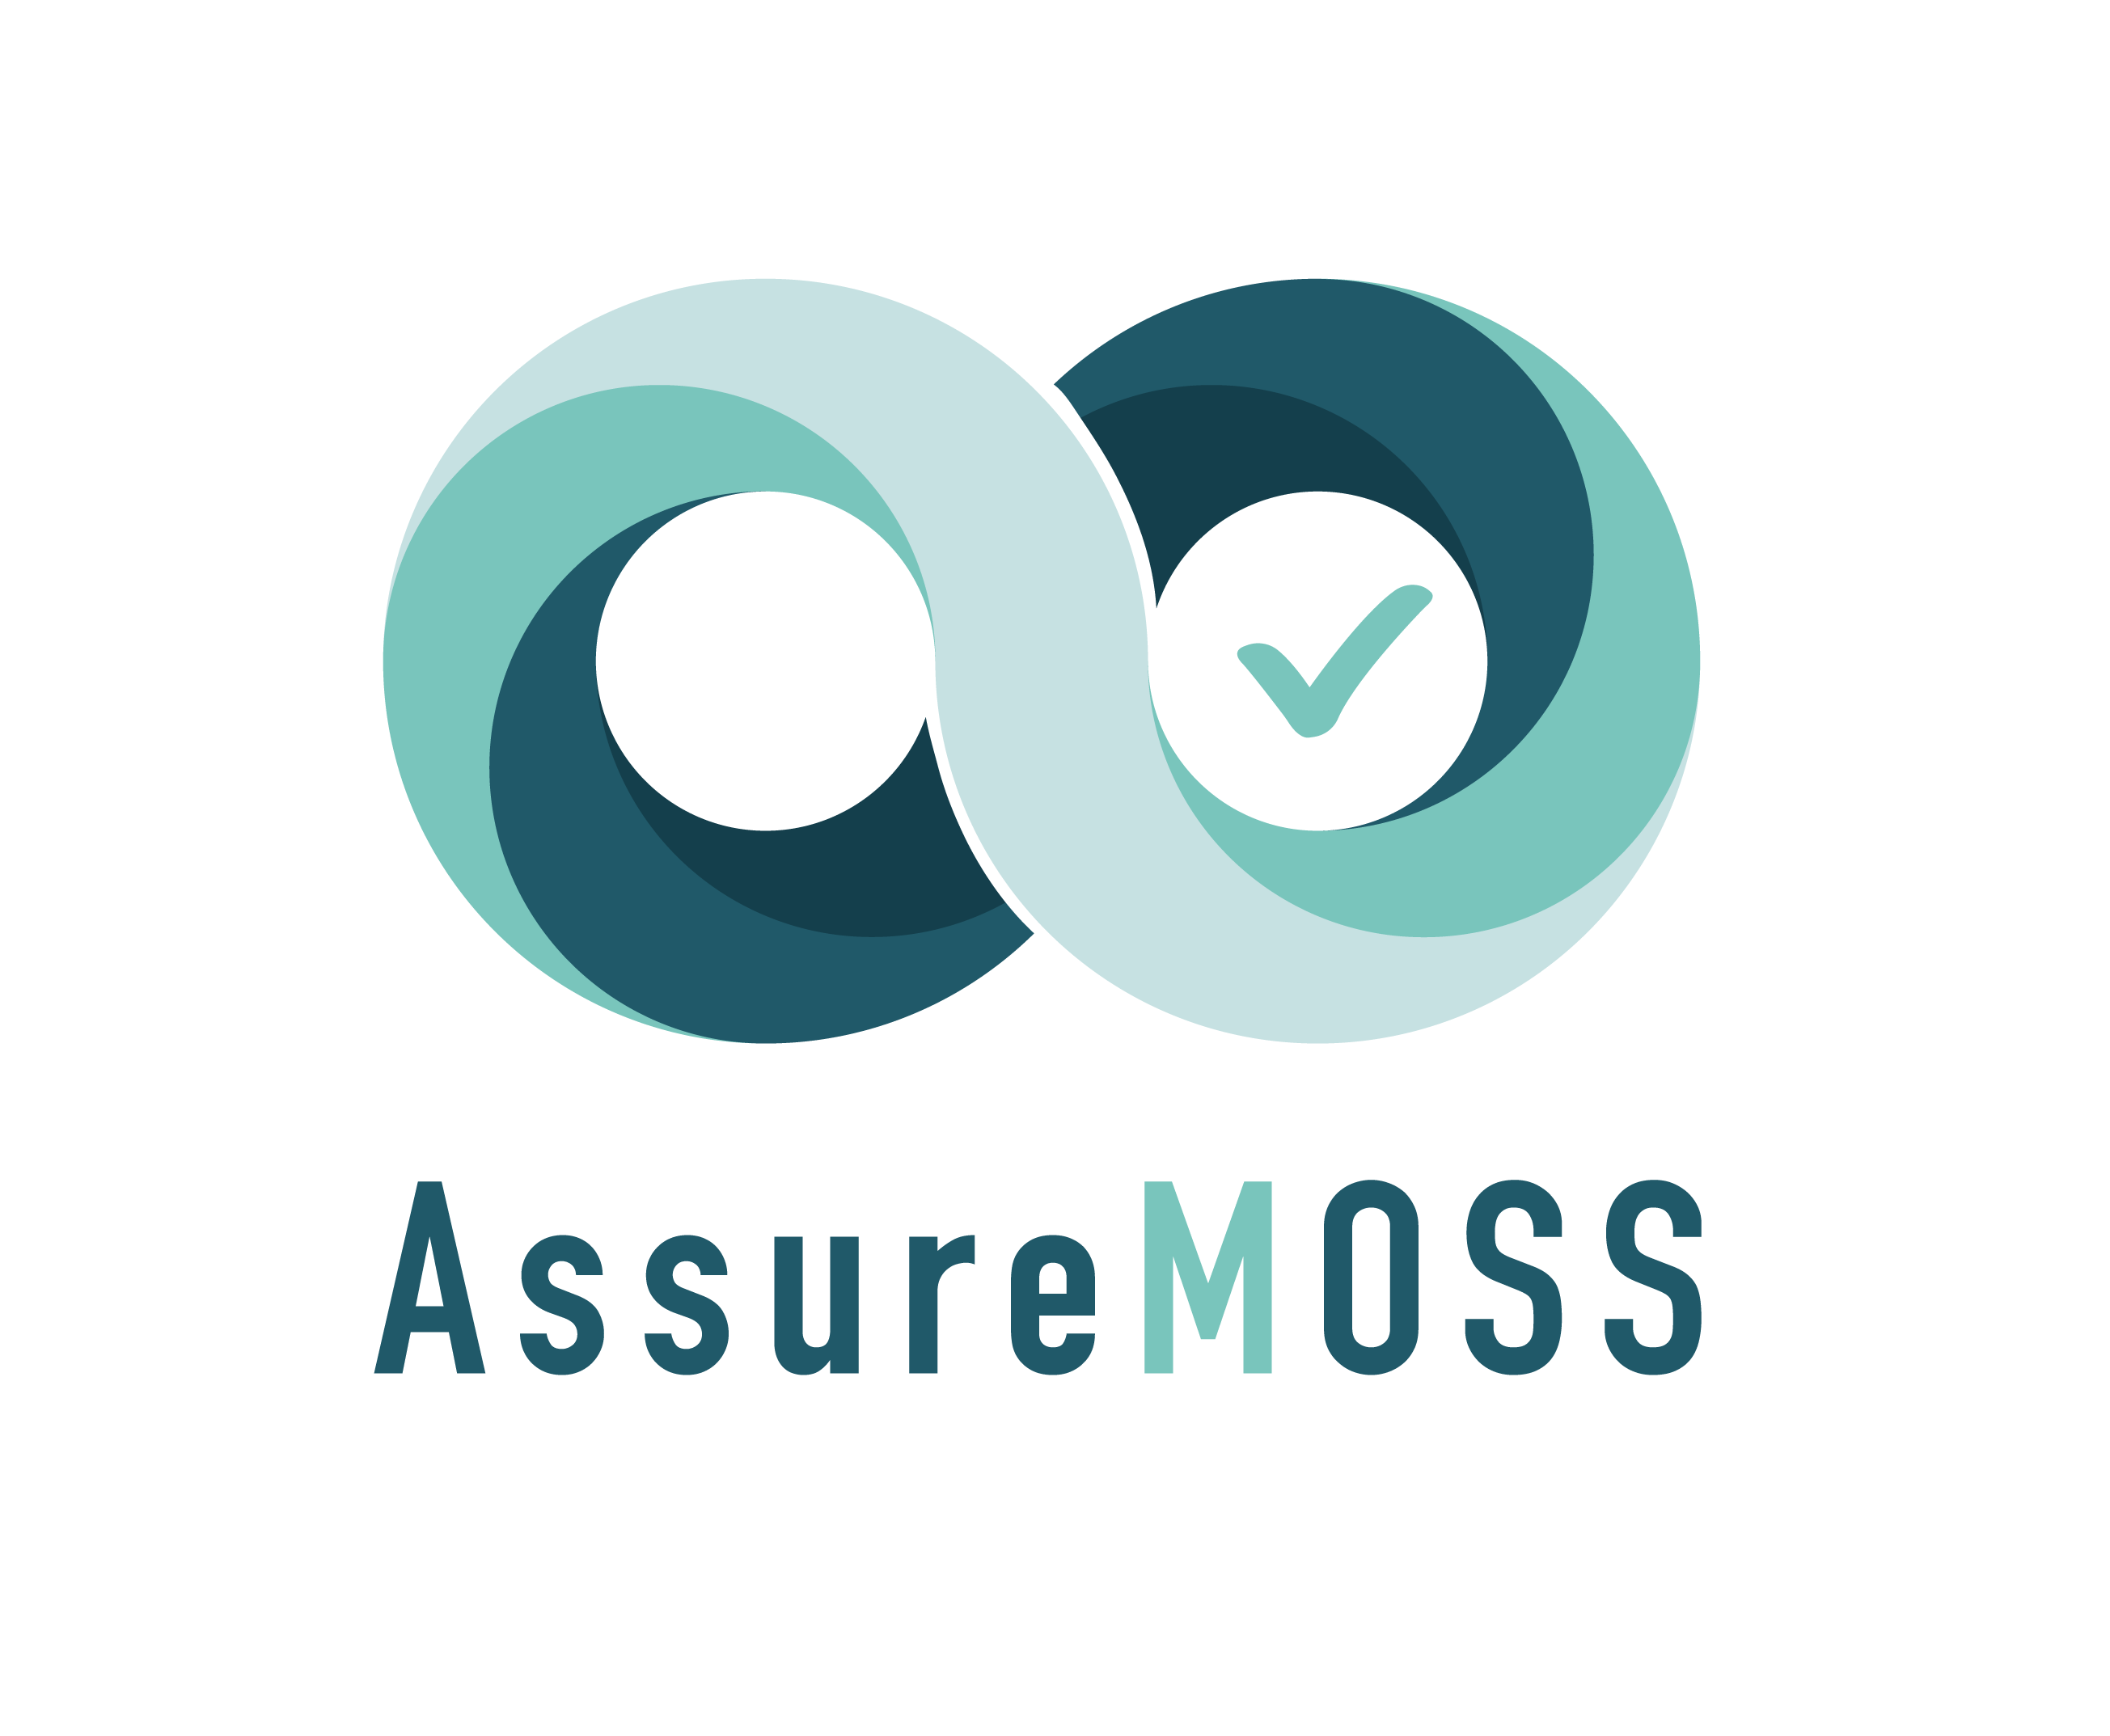 AssureMOSS logo